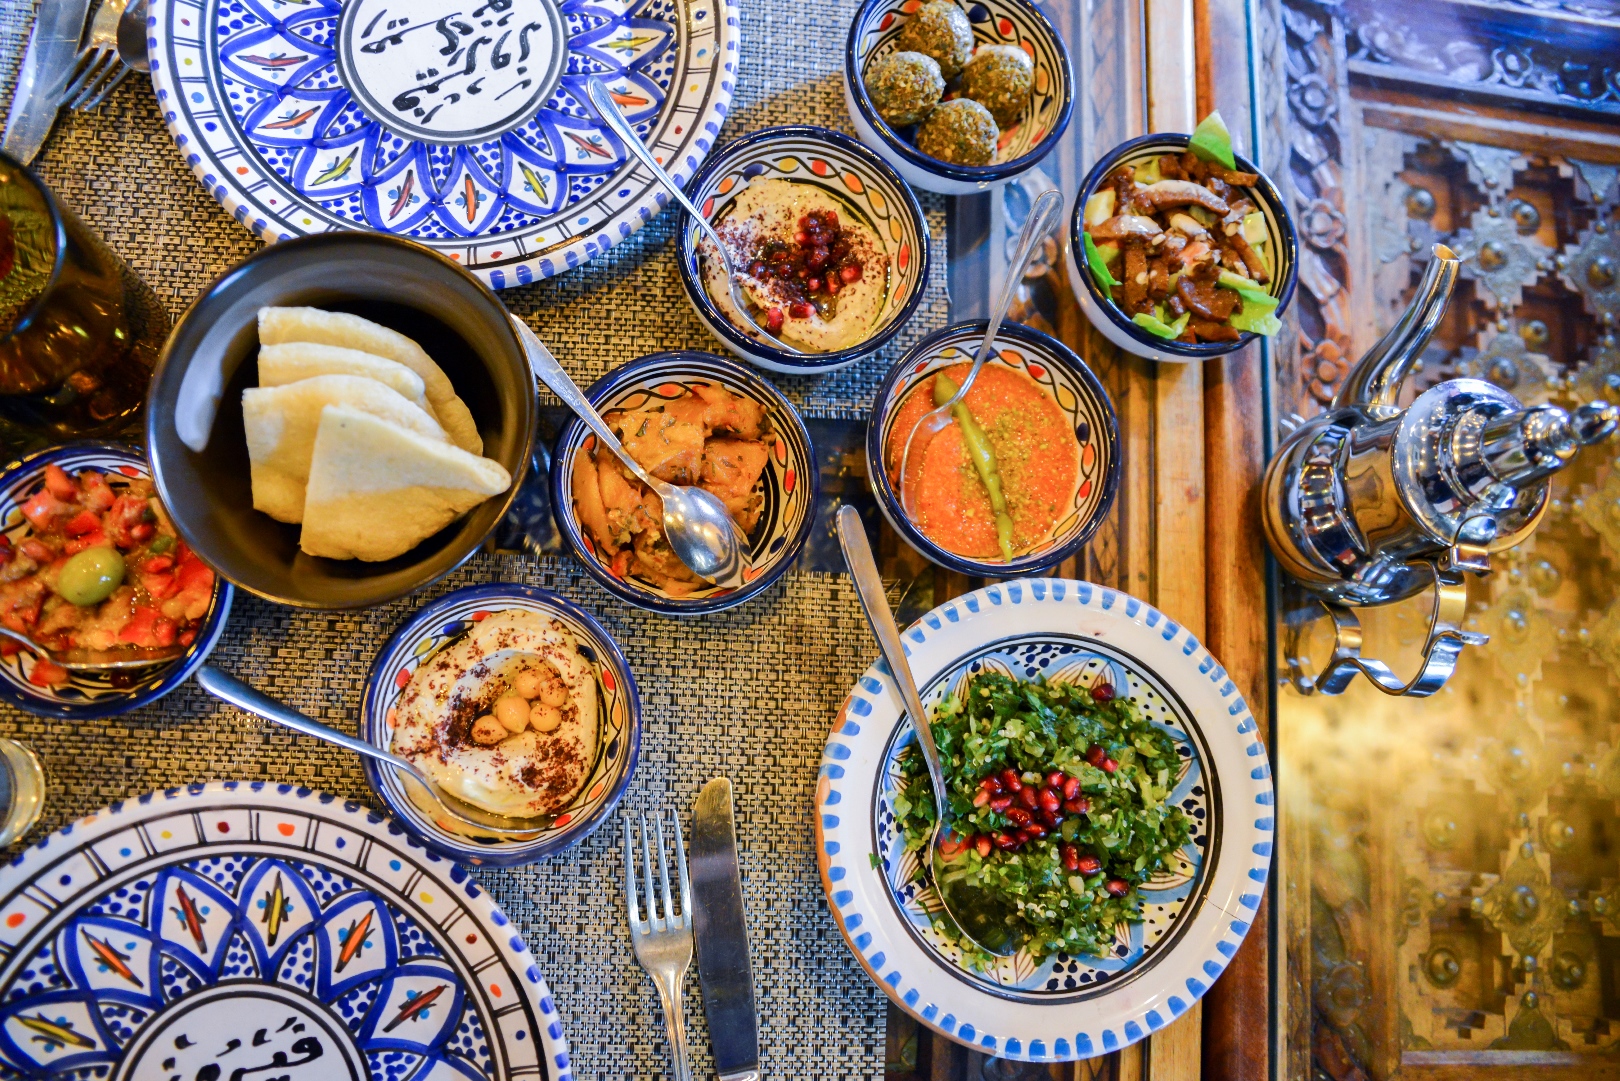 Middle Eastern meze dinner